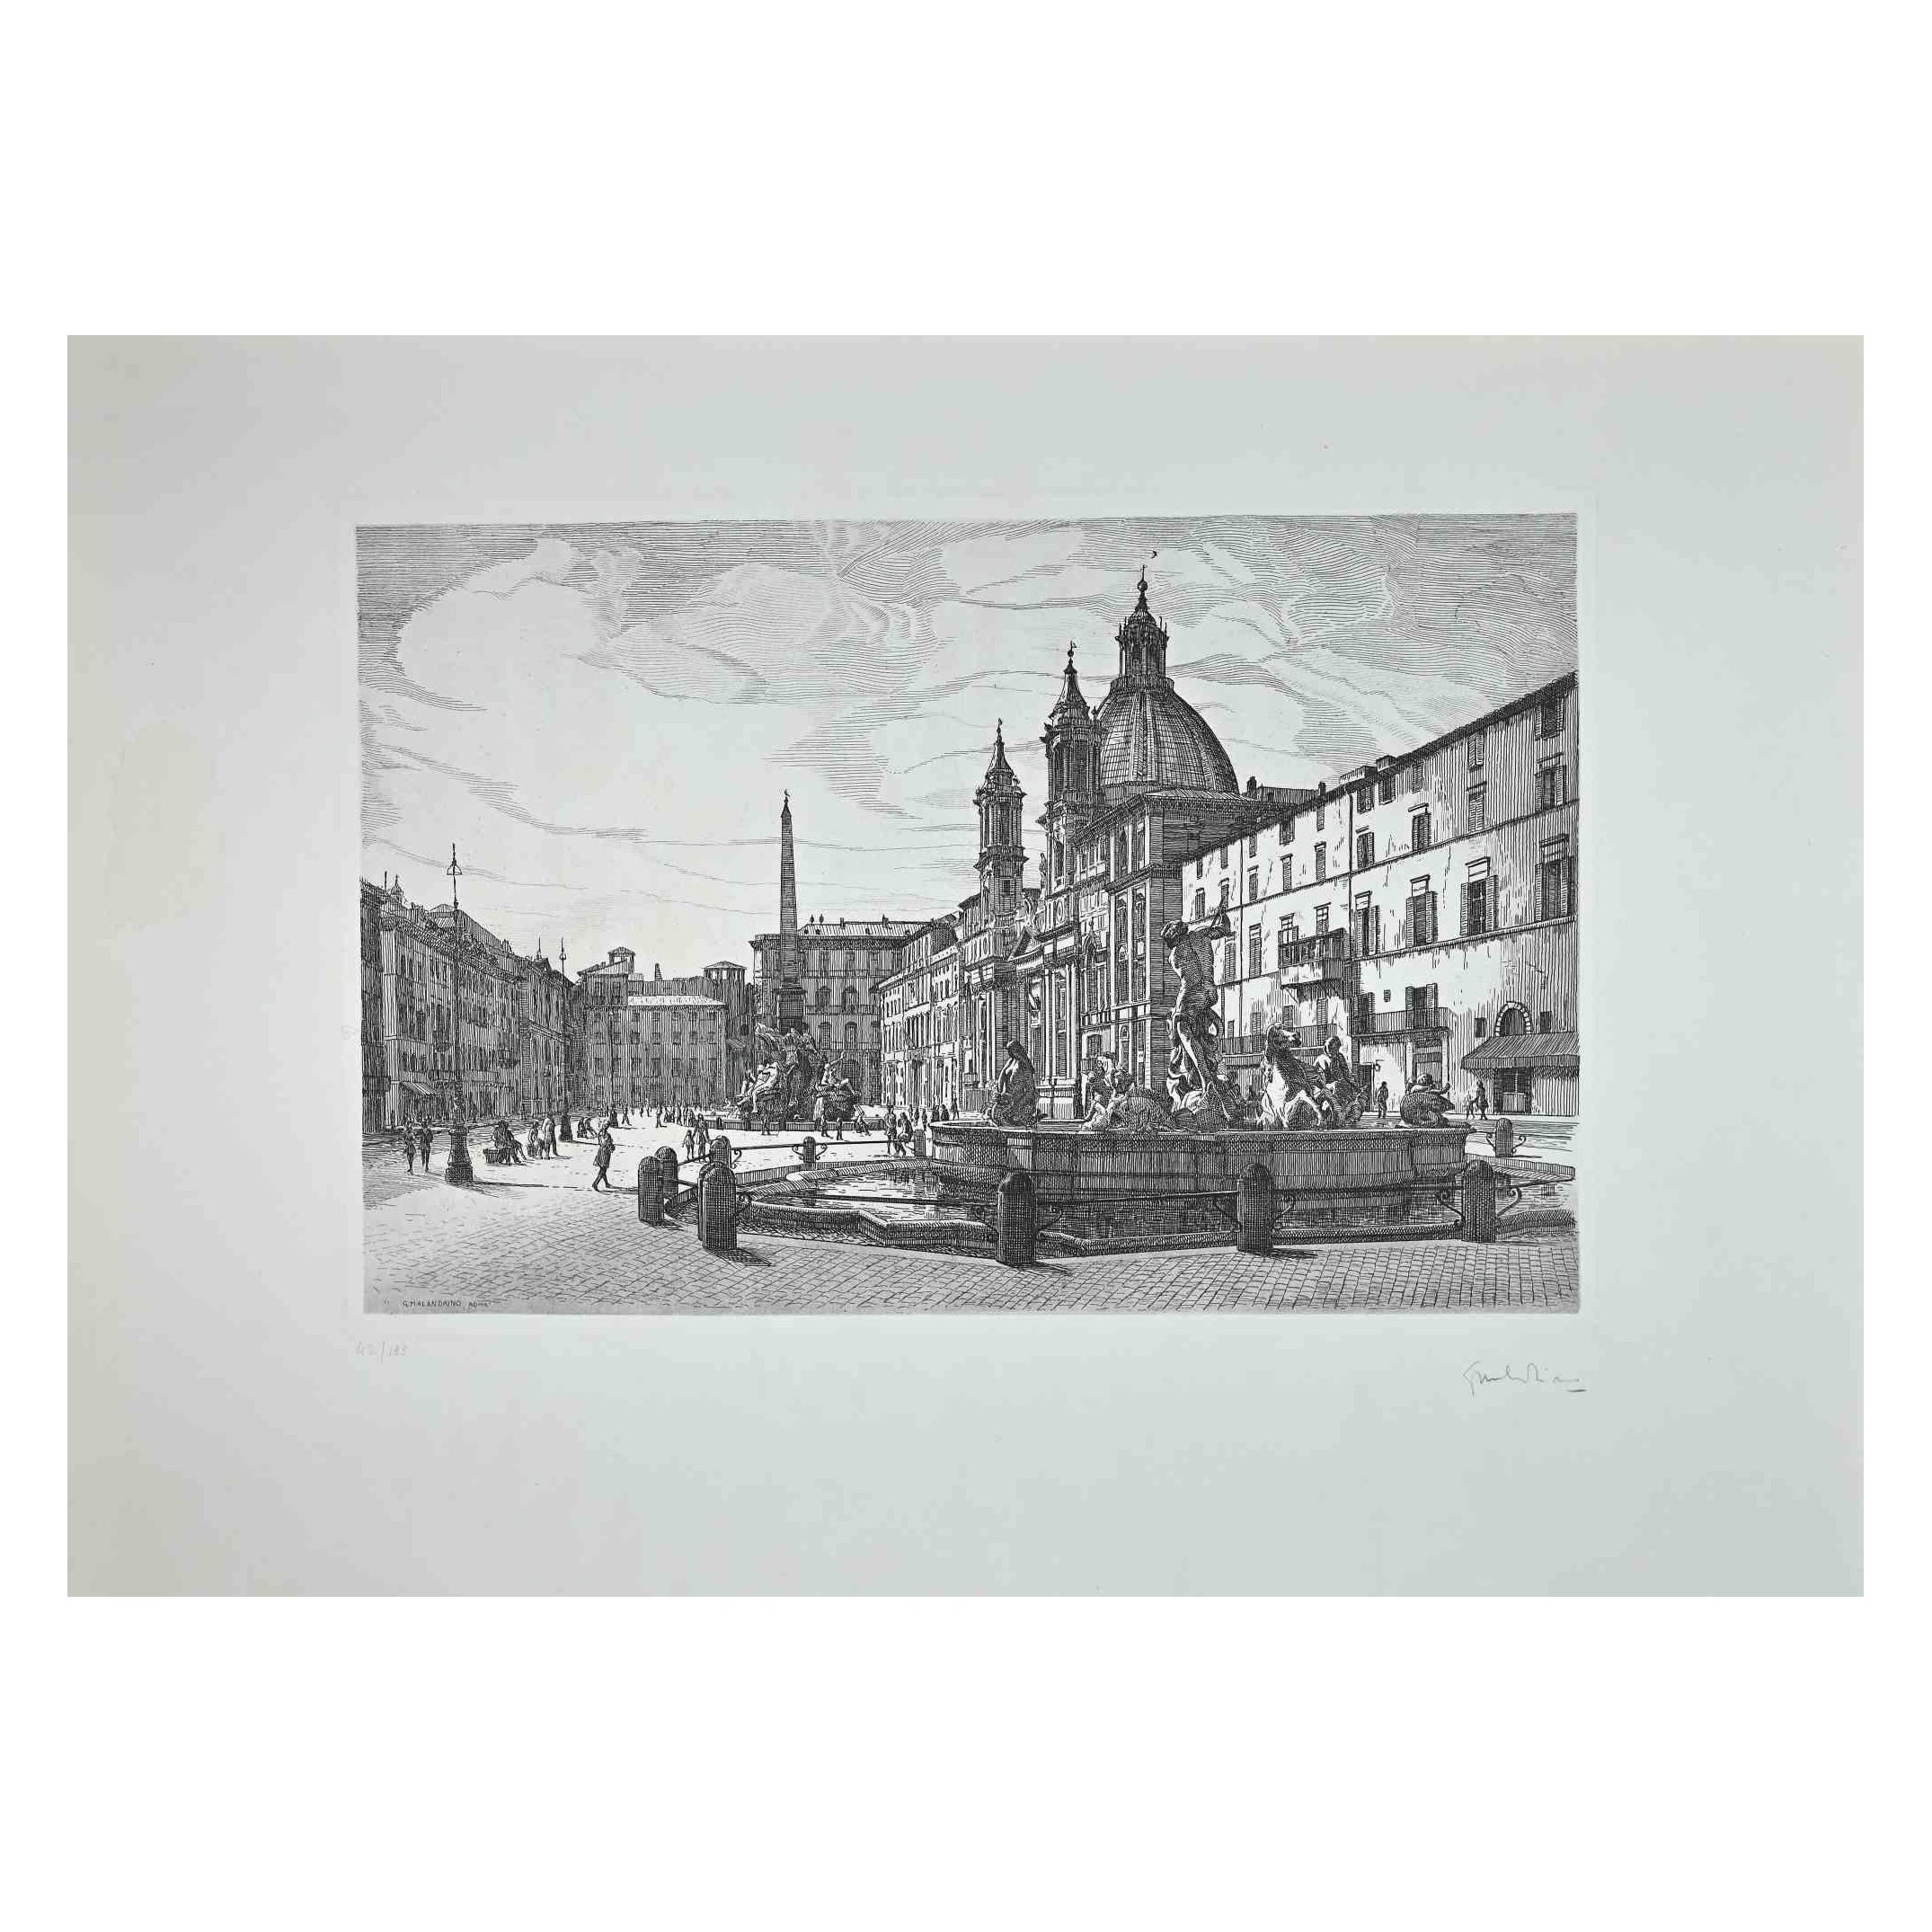 Der Blick auf die Piazza Navona ist ein originales zeitgenössisches Kunstwerk des italienischen Künstlers Giuseppe Malandrino aus dem Jahr 1970  (Modica, 1910 - Rom, 1979).
 
Radierung auf Karton.
 
Handsigniert mit Bleistift in der rechten unteren